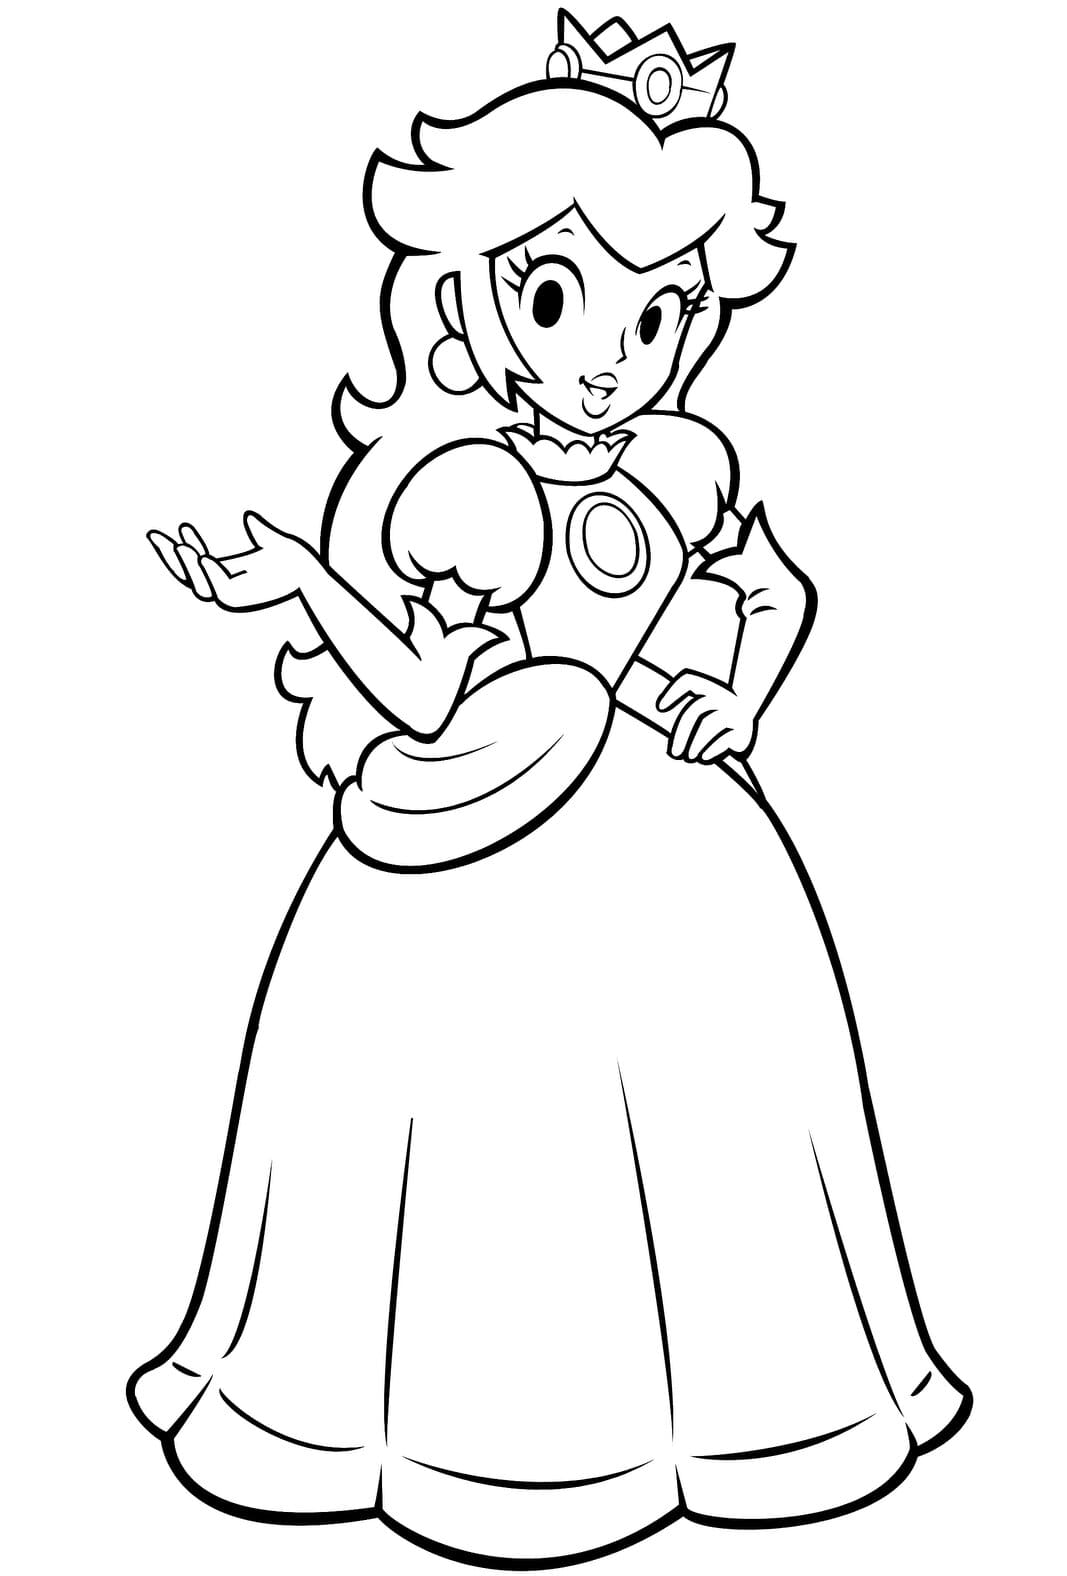 Princesa Peach levanta su mano derecha en Super Mario Bros Coloring Page